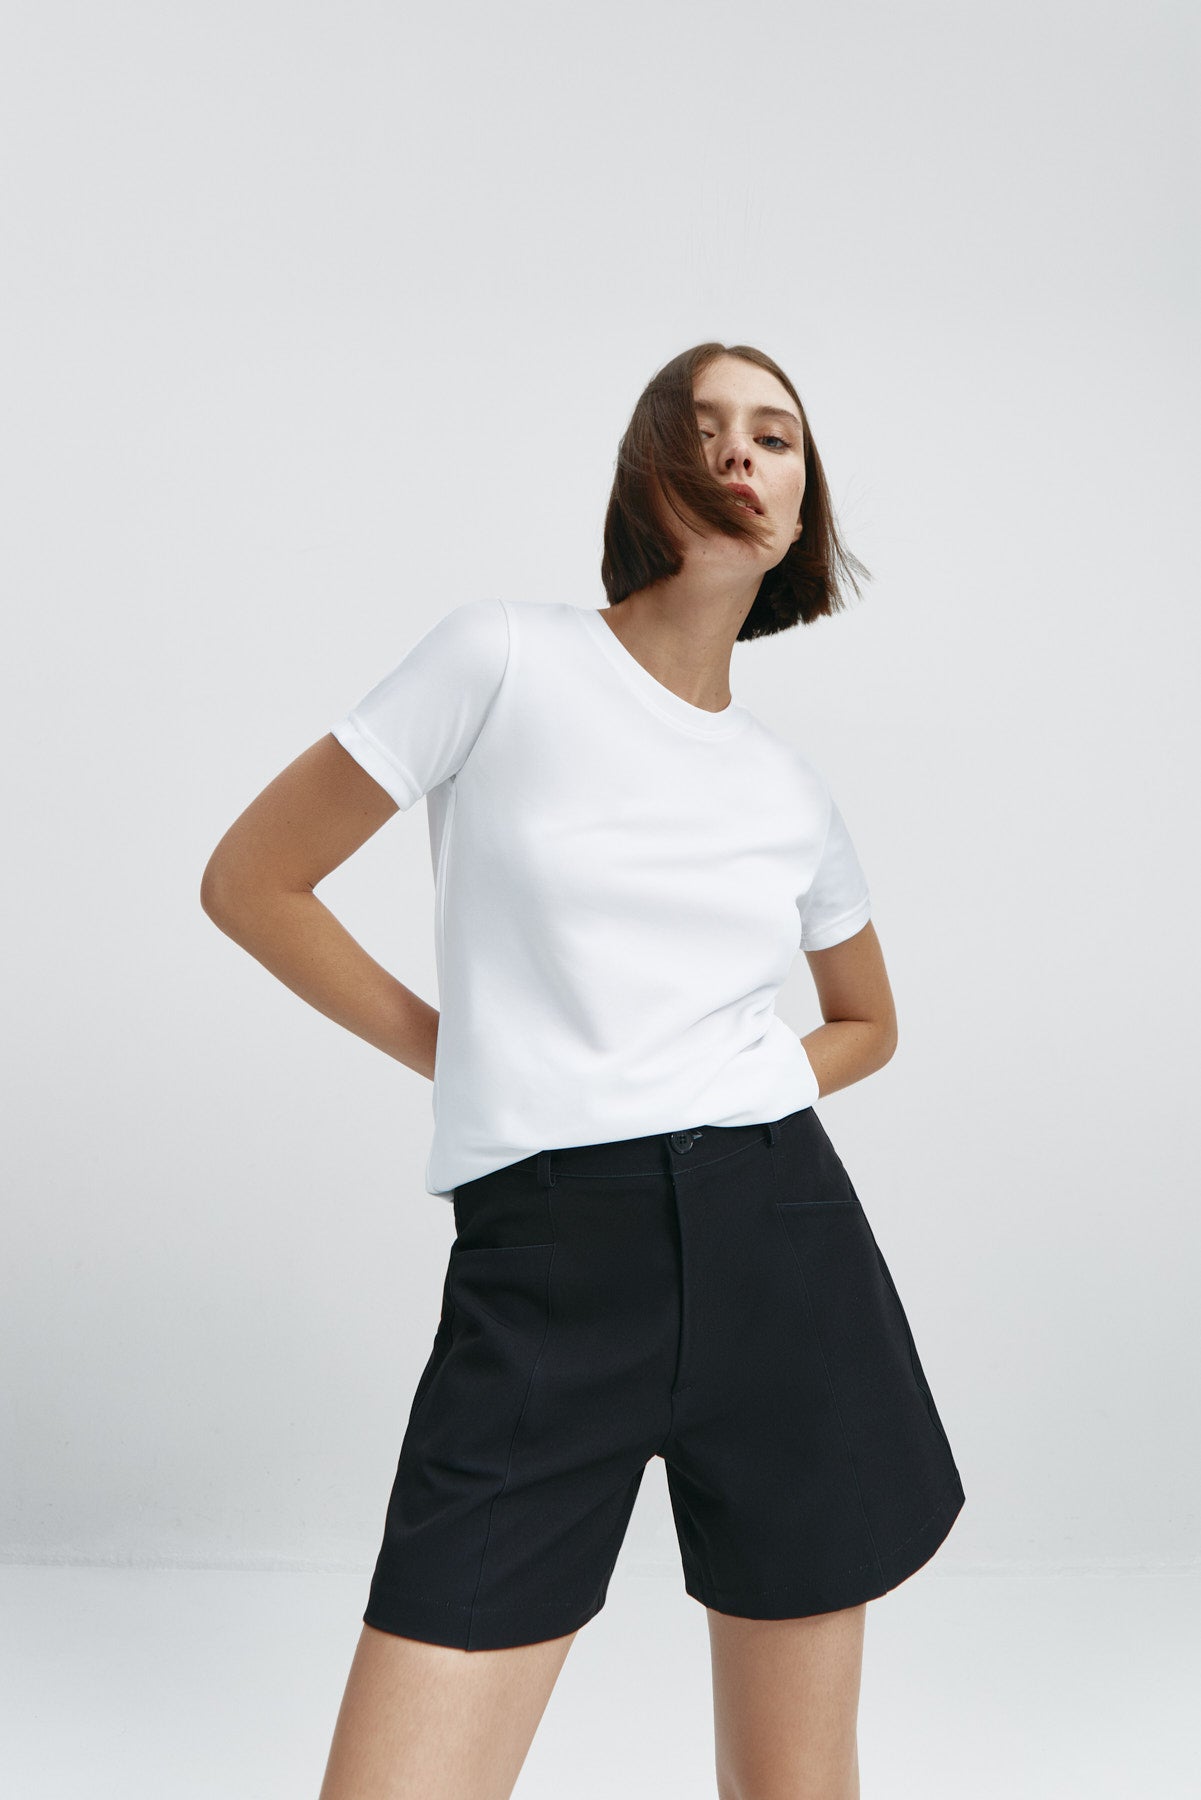 Camiseta básica de mujer blanca de manga corta, antiarrugas y antimanchas. Foto flexibilidad